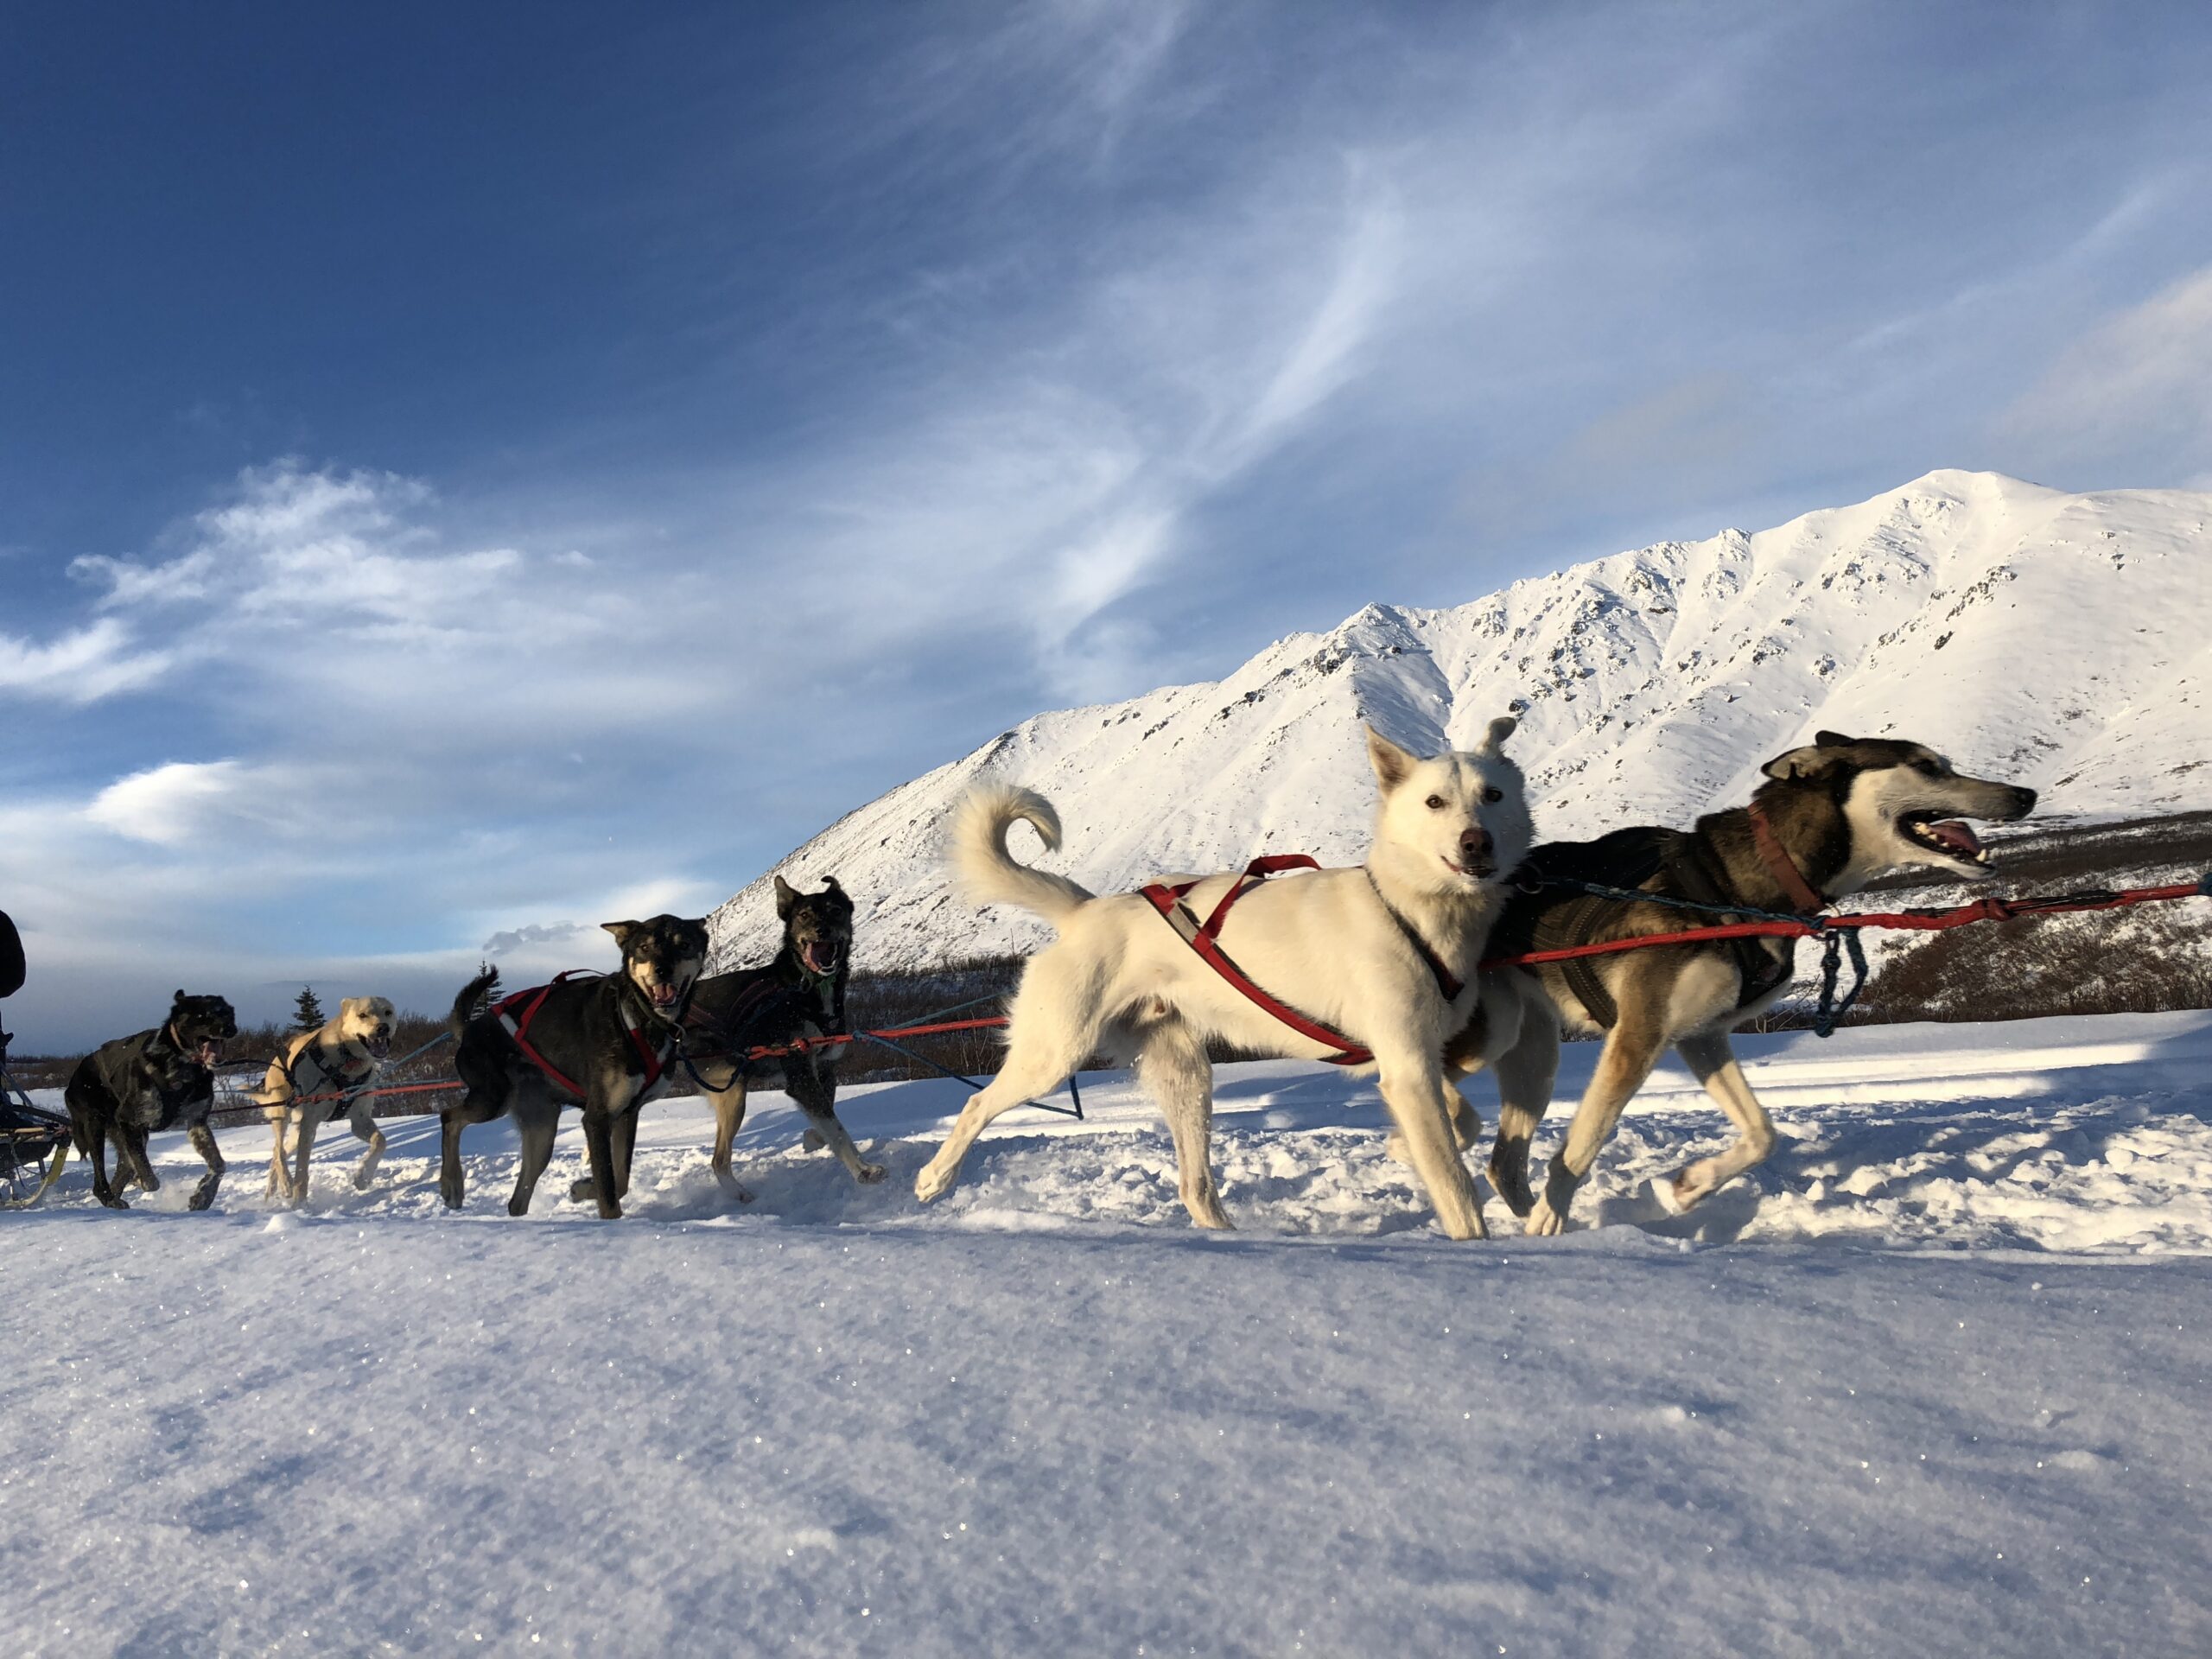 Blair Braverman's dog team runs in the snow near a mountain